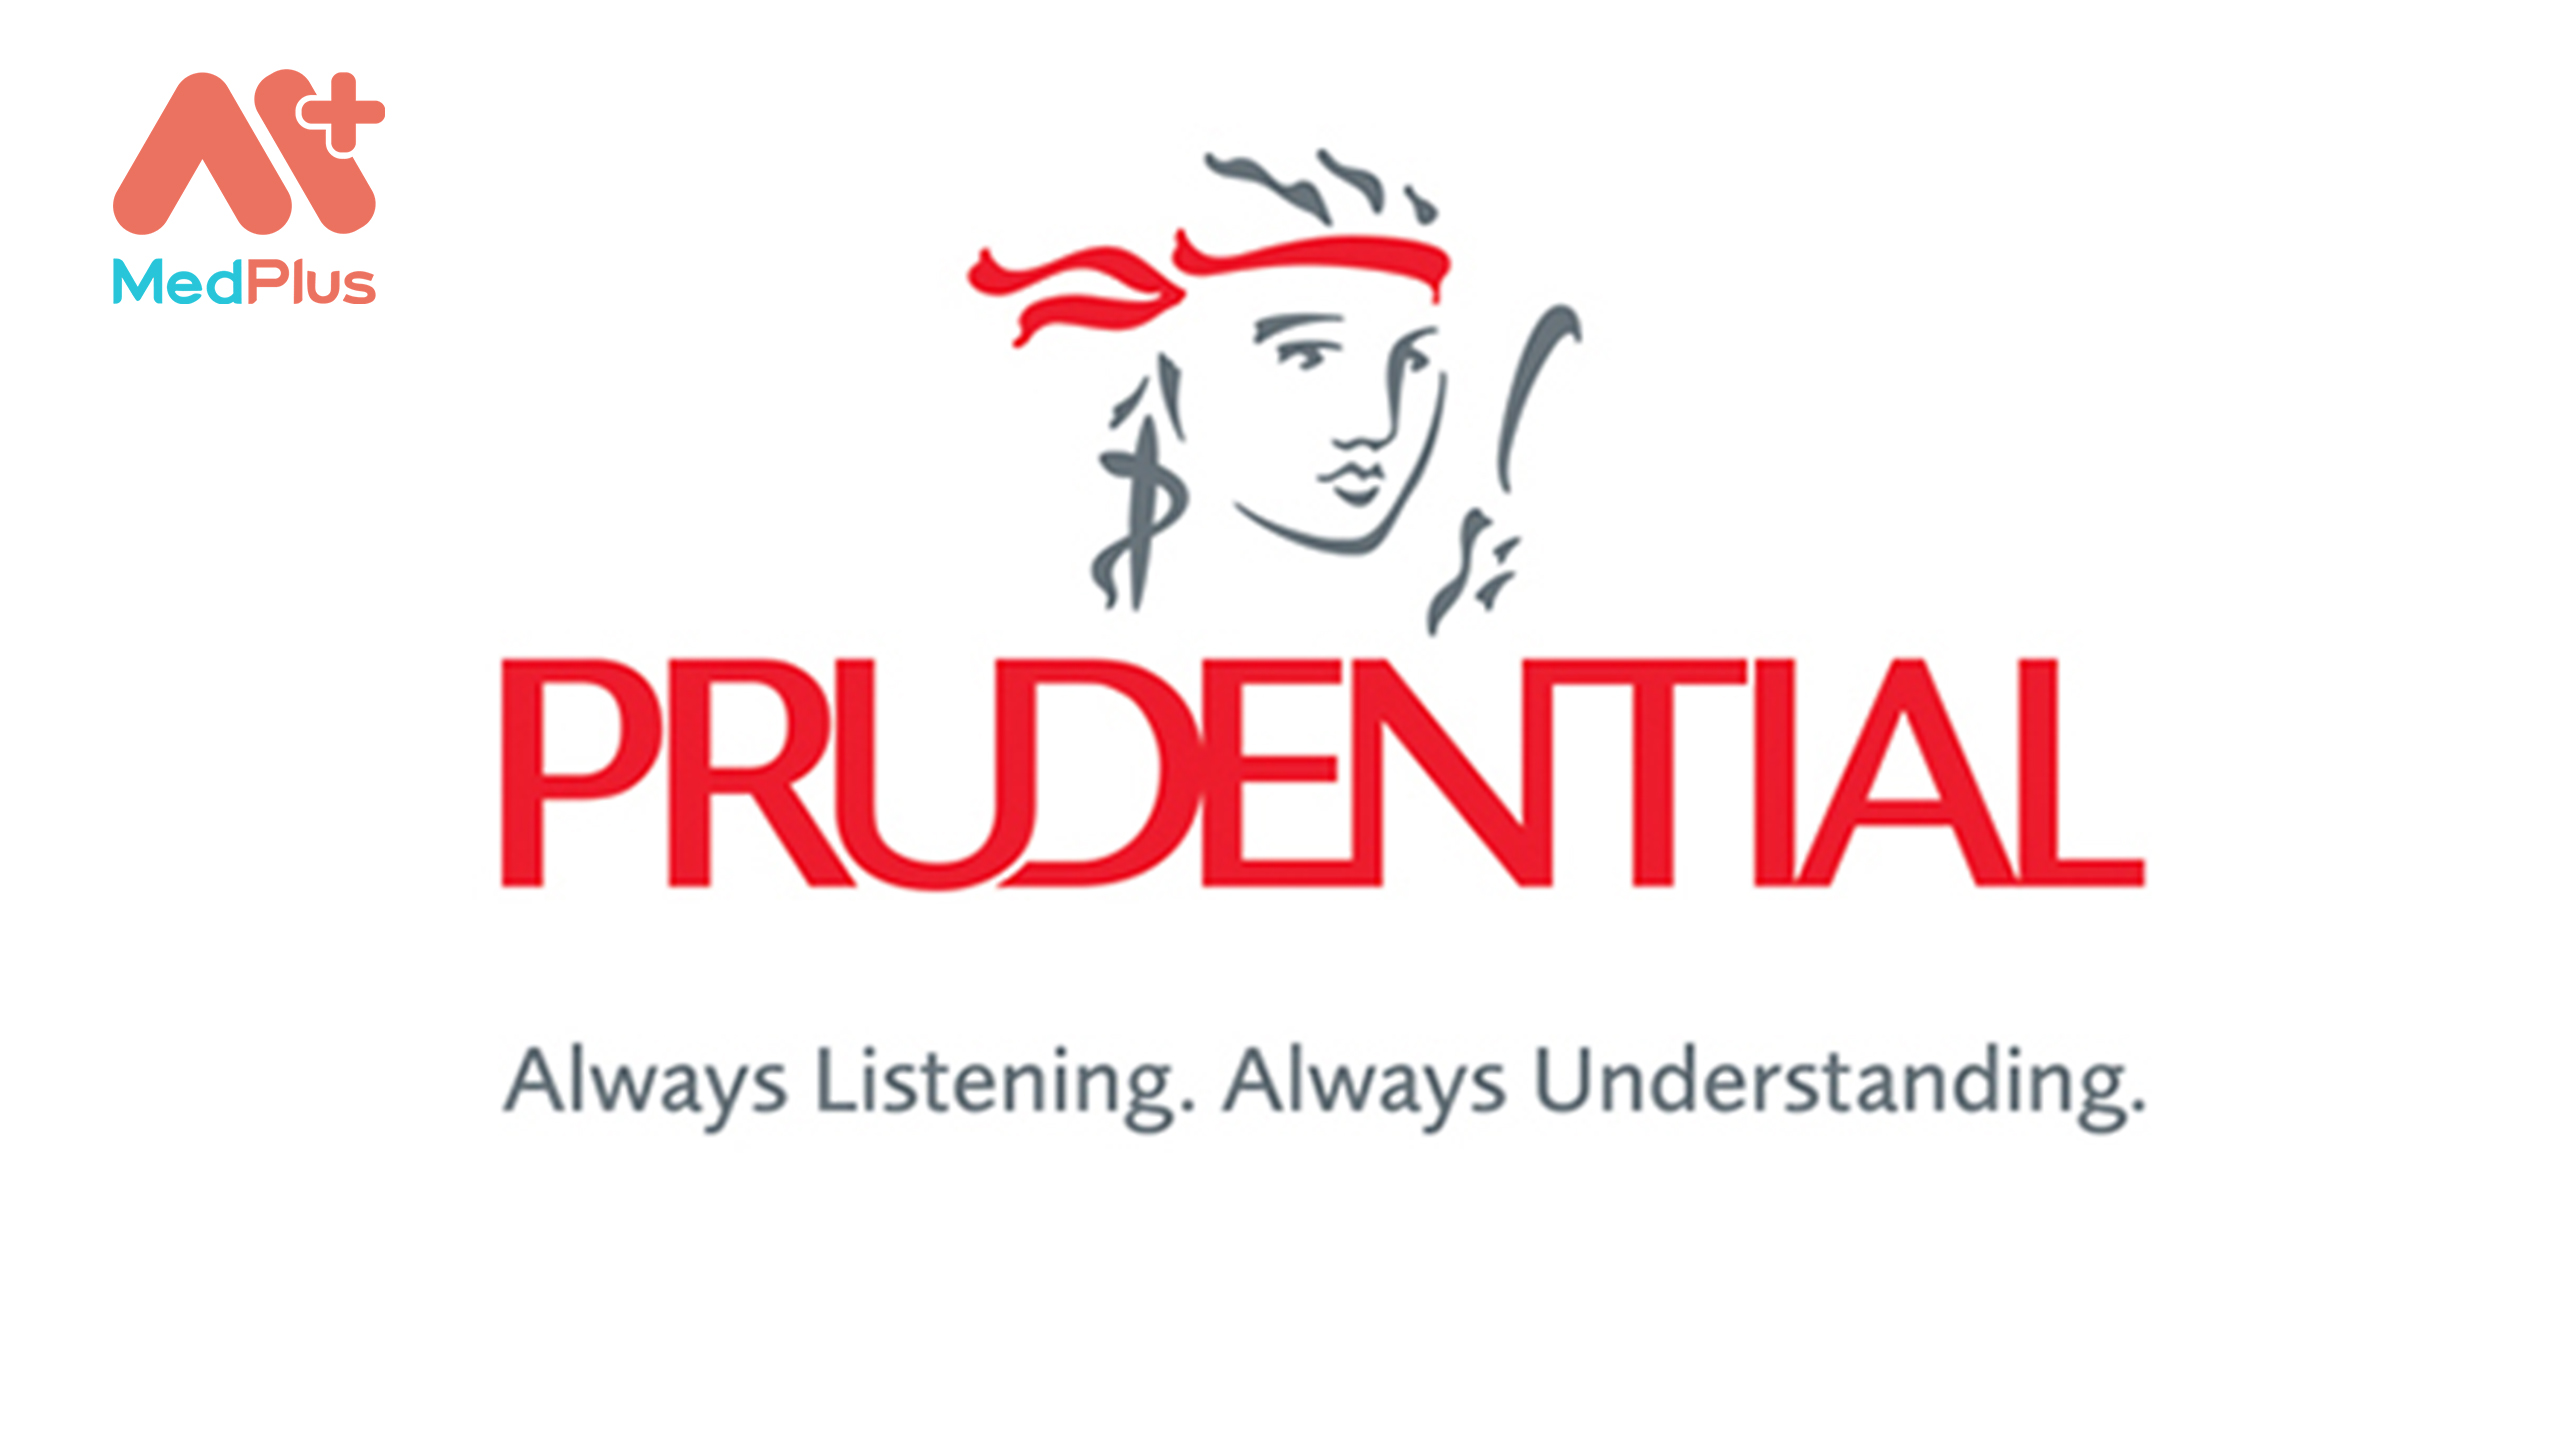 Bảo hiểm Prudential được đánh giá cao về chất lượng và dịch vụ